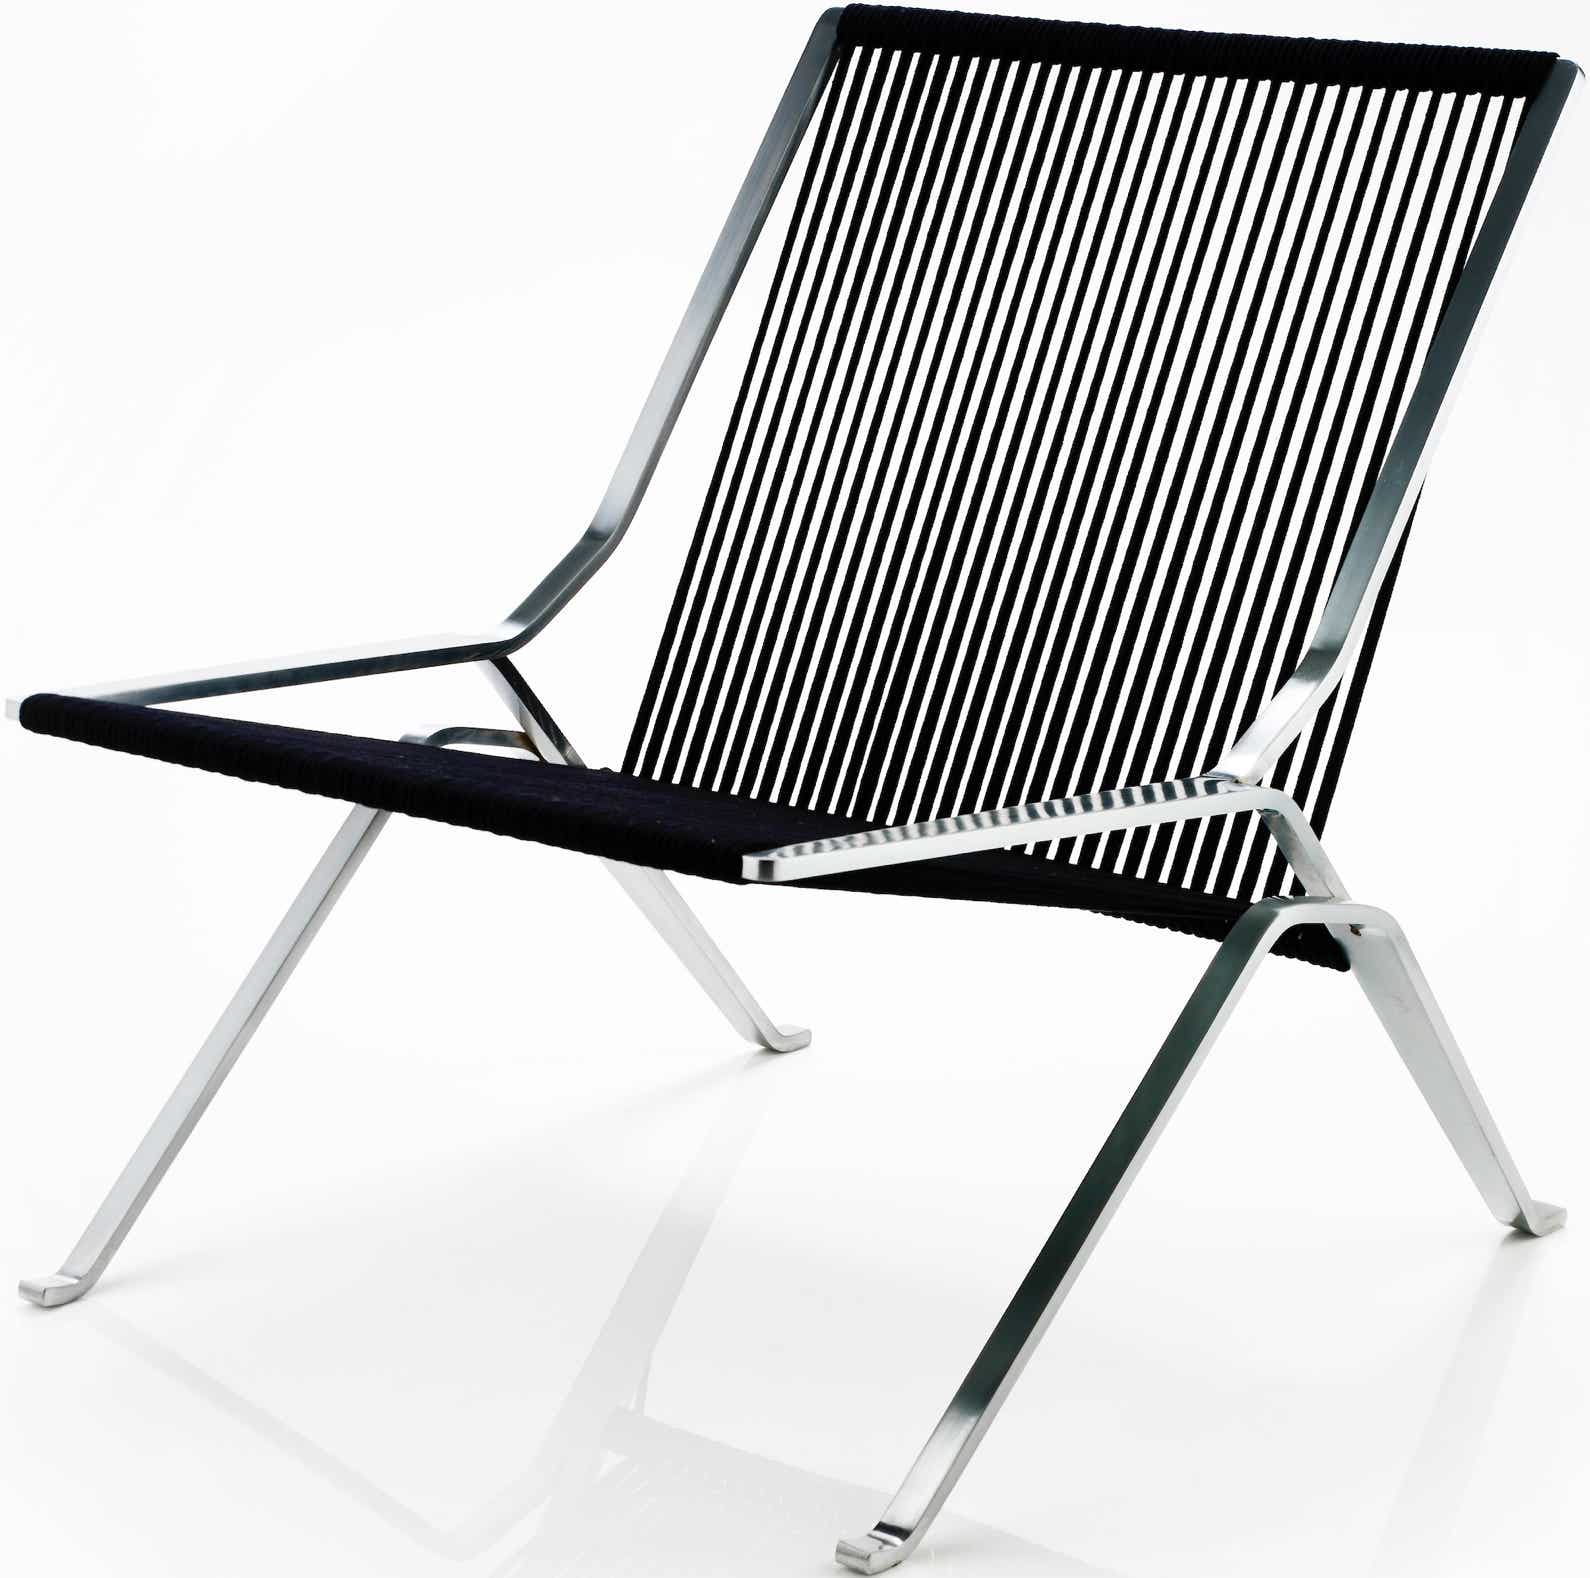 PK25 Lounge chair  Poul KjÃ¦rholm, 1951